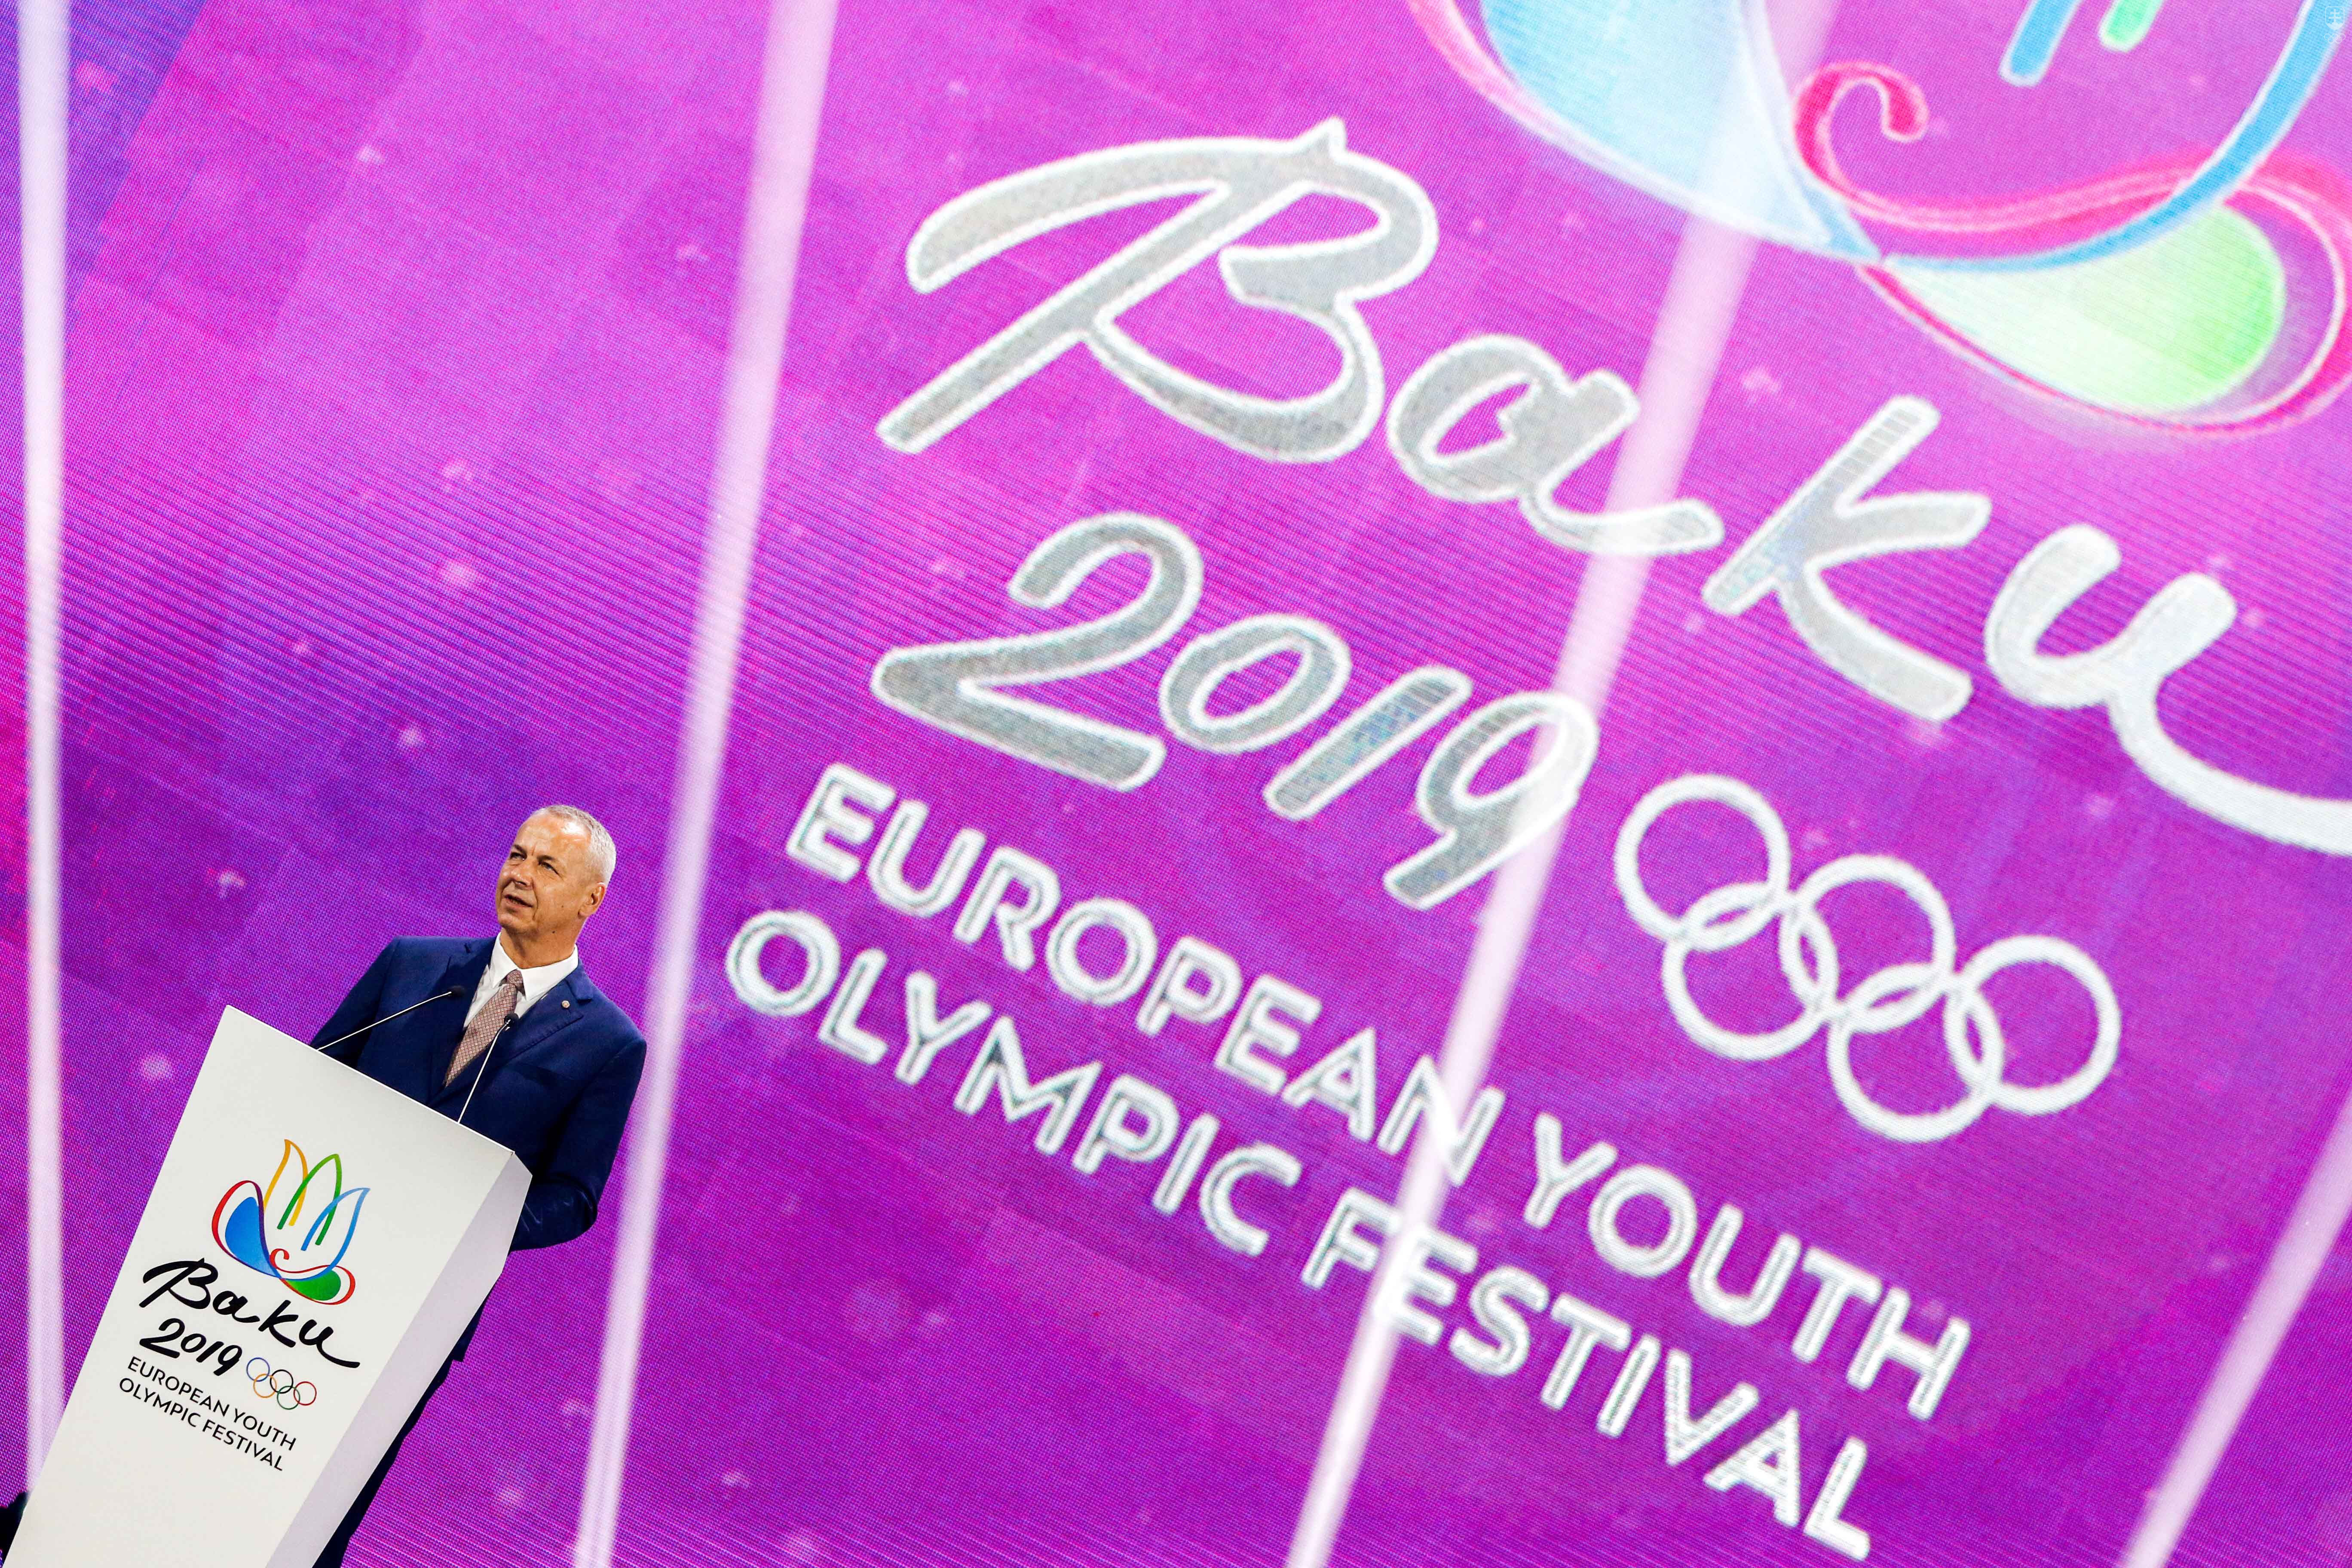 Primátor Banskej Bystrice, hostiteľského mesta XVI. letného EYOF 2021, Ján Nosko pri slávnostnom príhovore pri príležitosti prevzatia vlajky Európskych olympijských výborov.